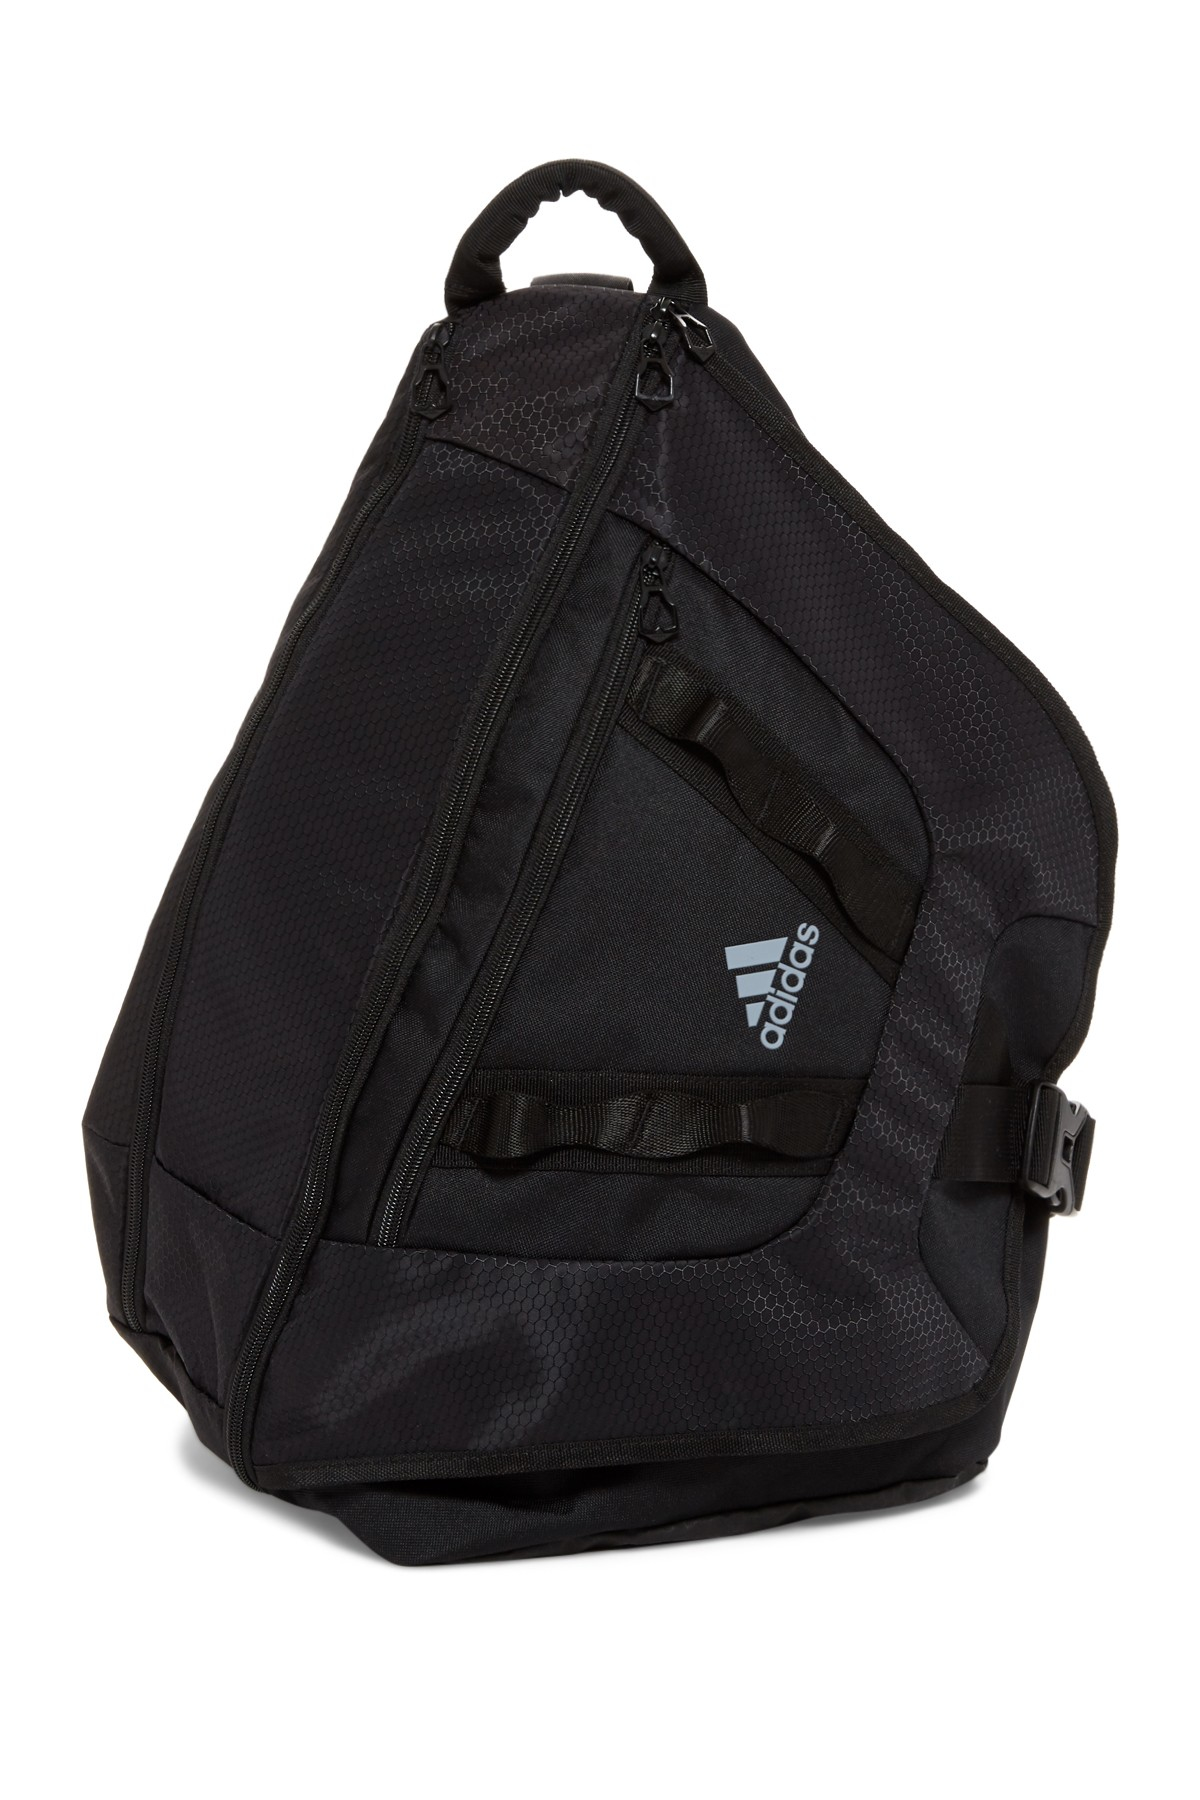 bestemt Grænseværdi Forstærke adidas Originals Synthetic Capital Ii Sling Backpack in Black for Men - Lyst